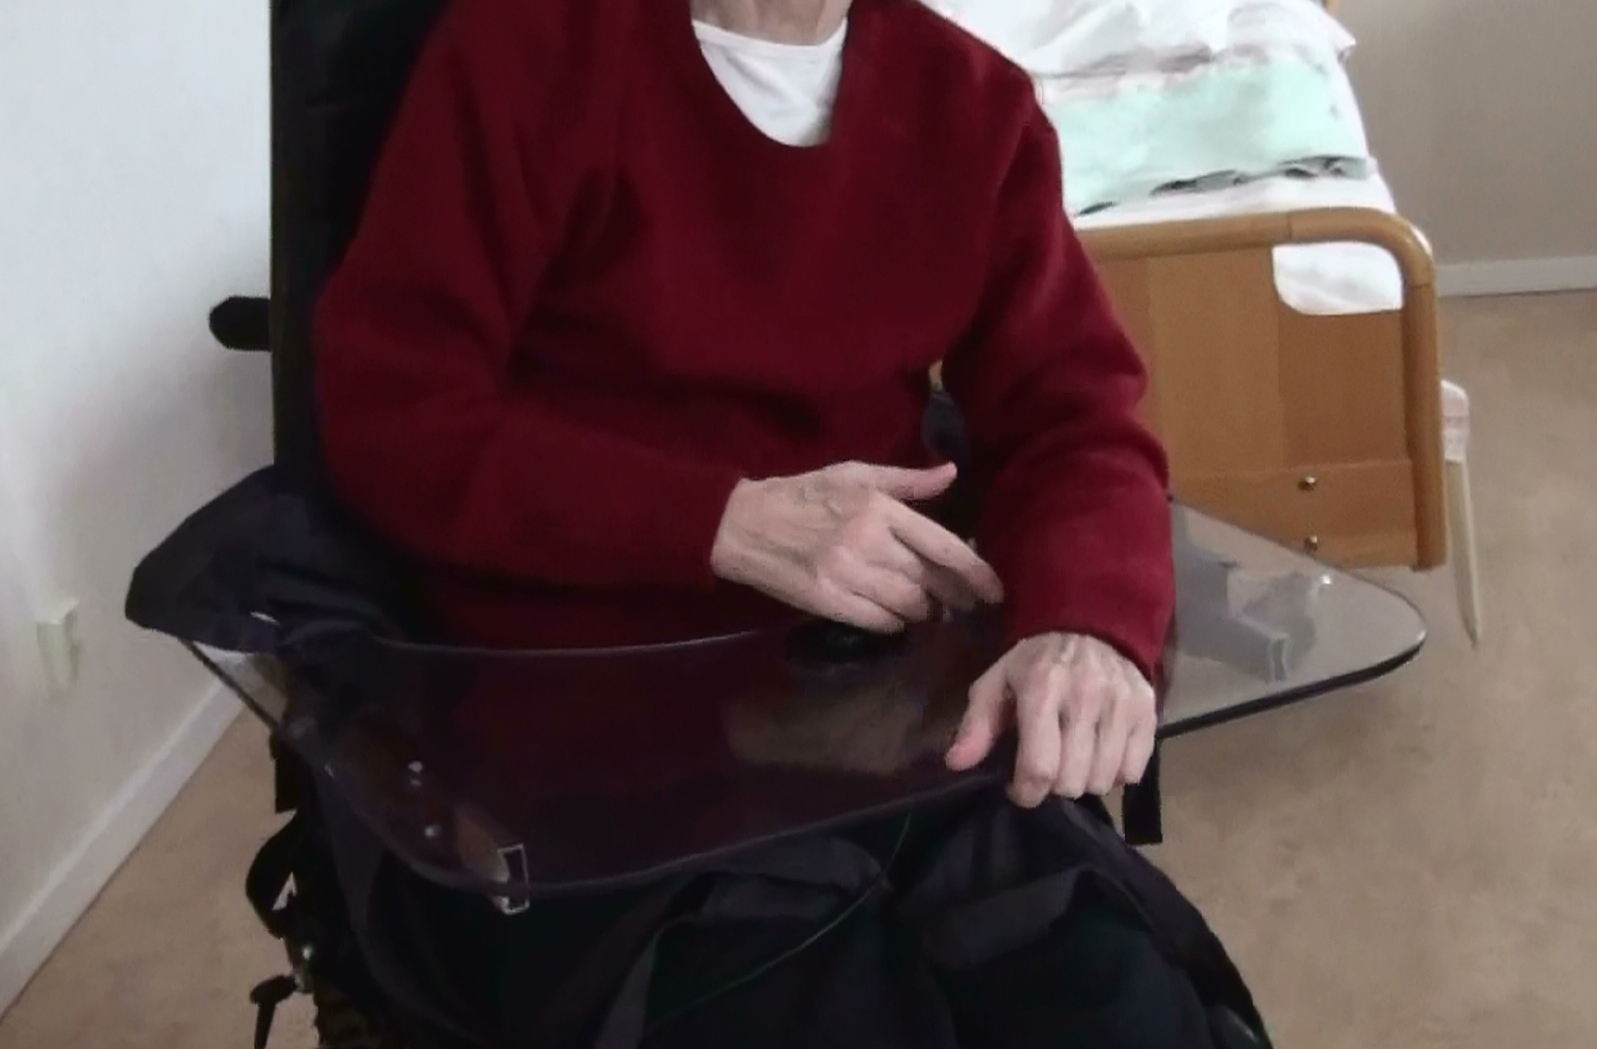 En äldre dam med demens övar i elrullstol. Foto: Lisbeth Nilsson